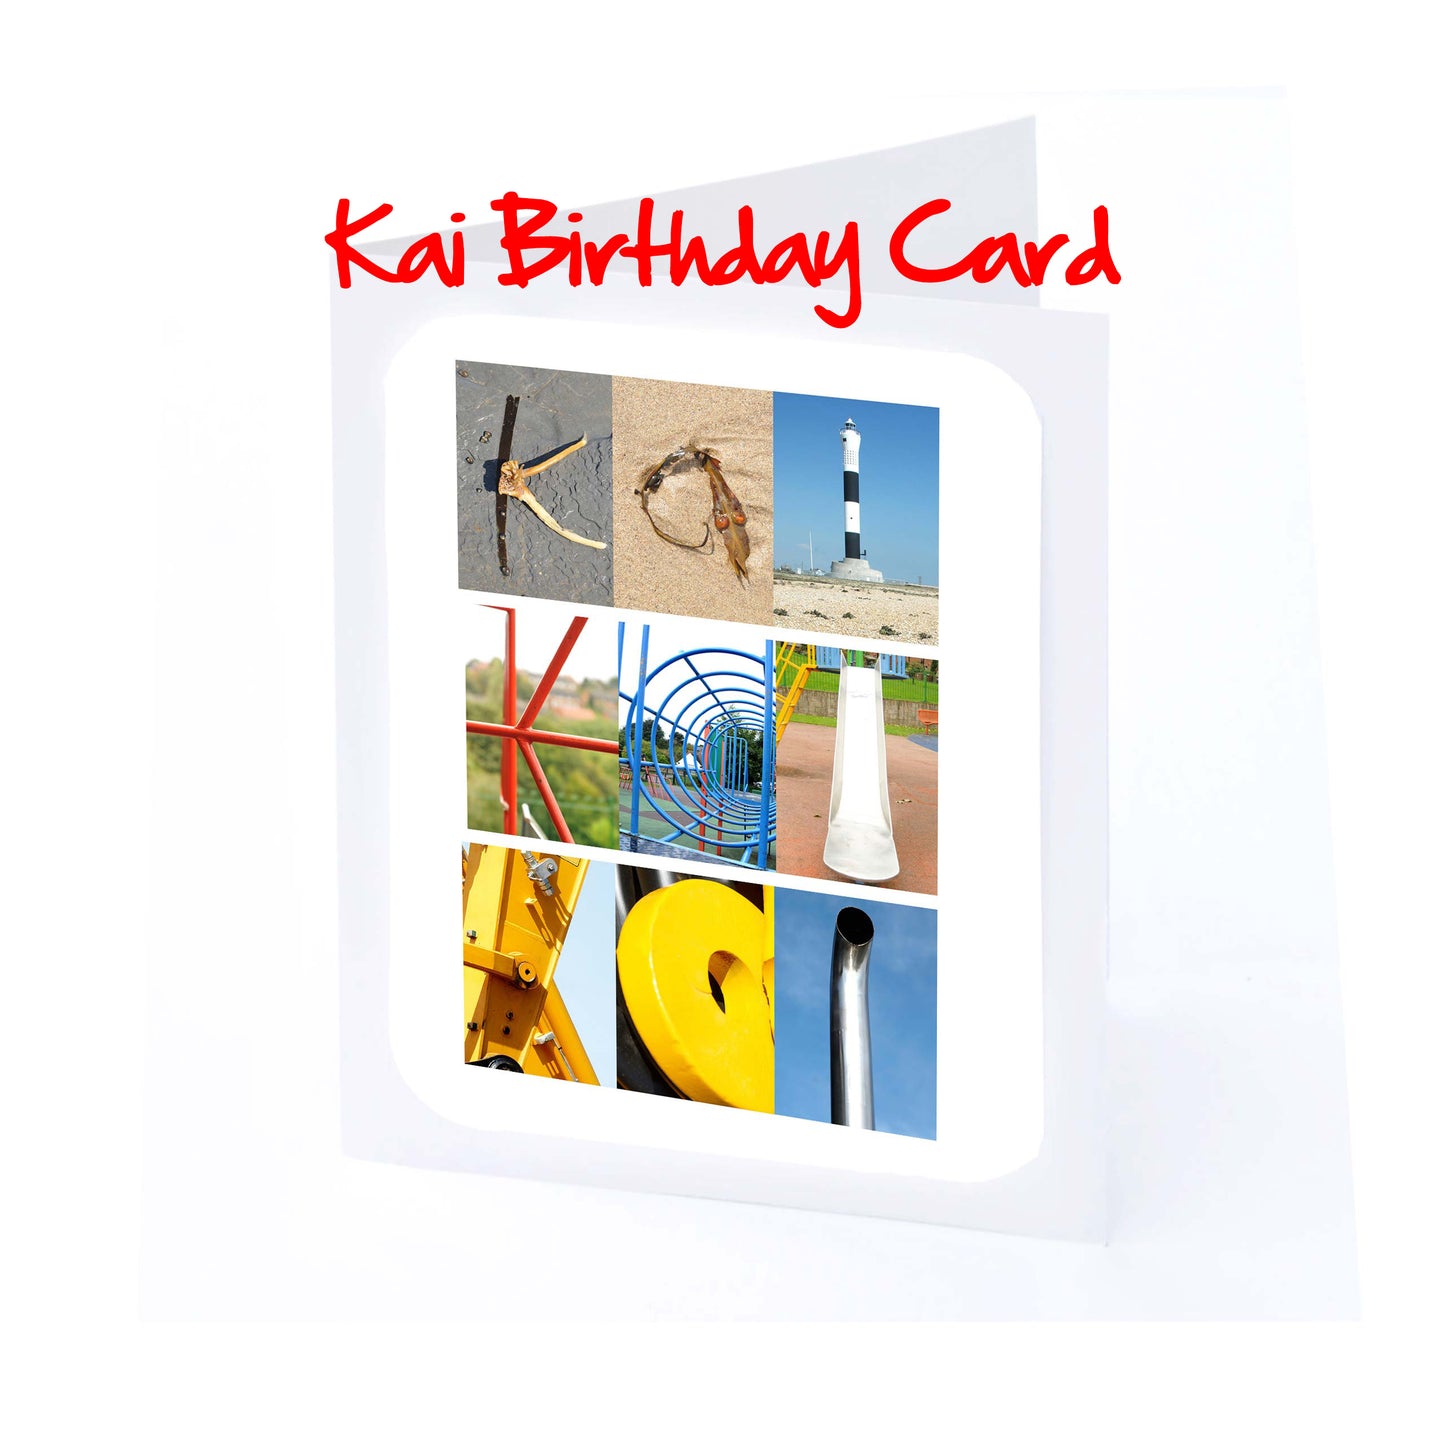 Jos - Kie Boys Personalised Card - Joseph, Joshua, Josh, Joshy, Jude, Julian, Kai, Kasper, Kieran  Any name - Personalised Birthday Cards